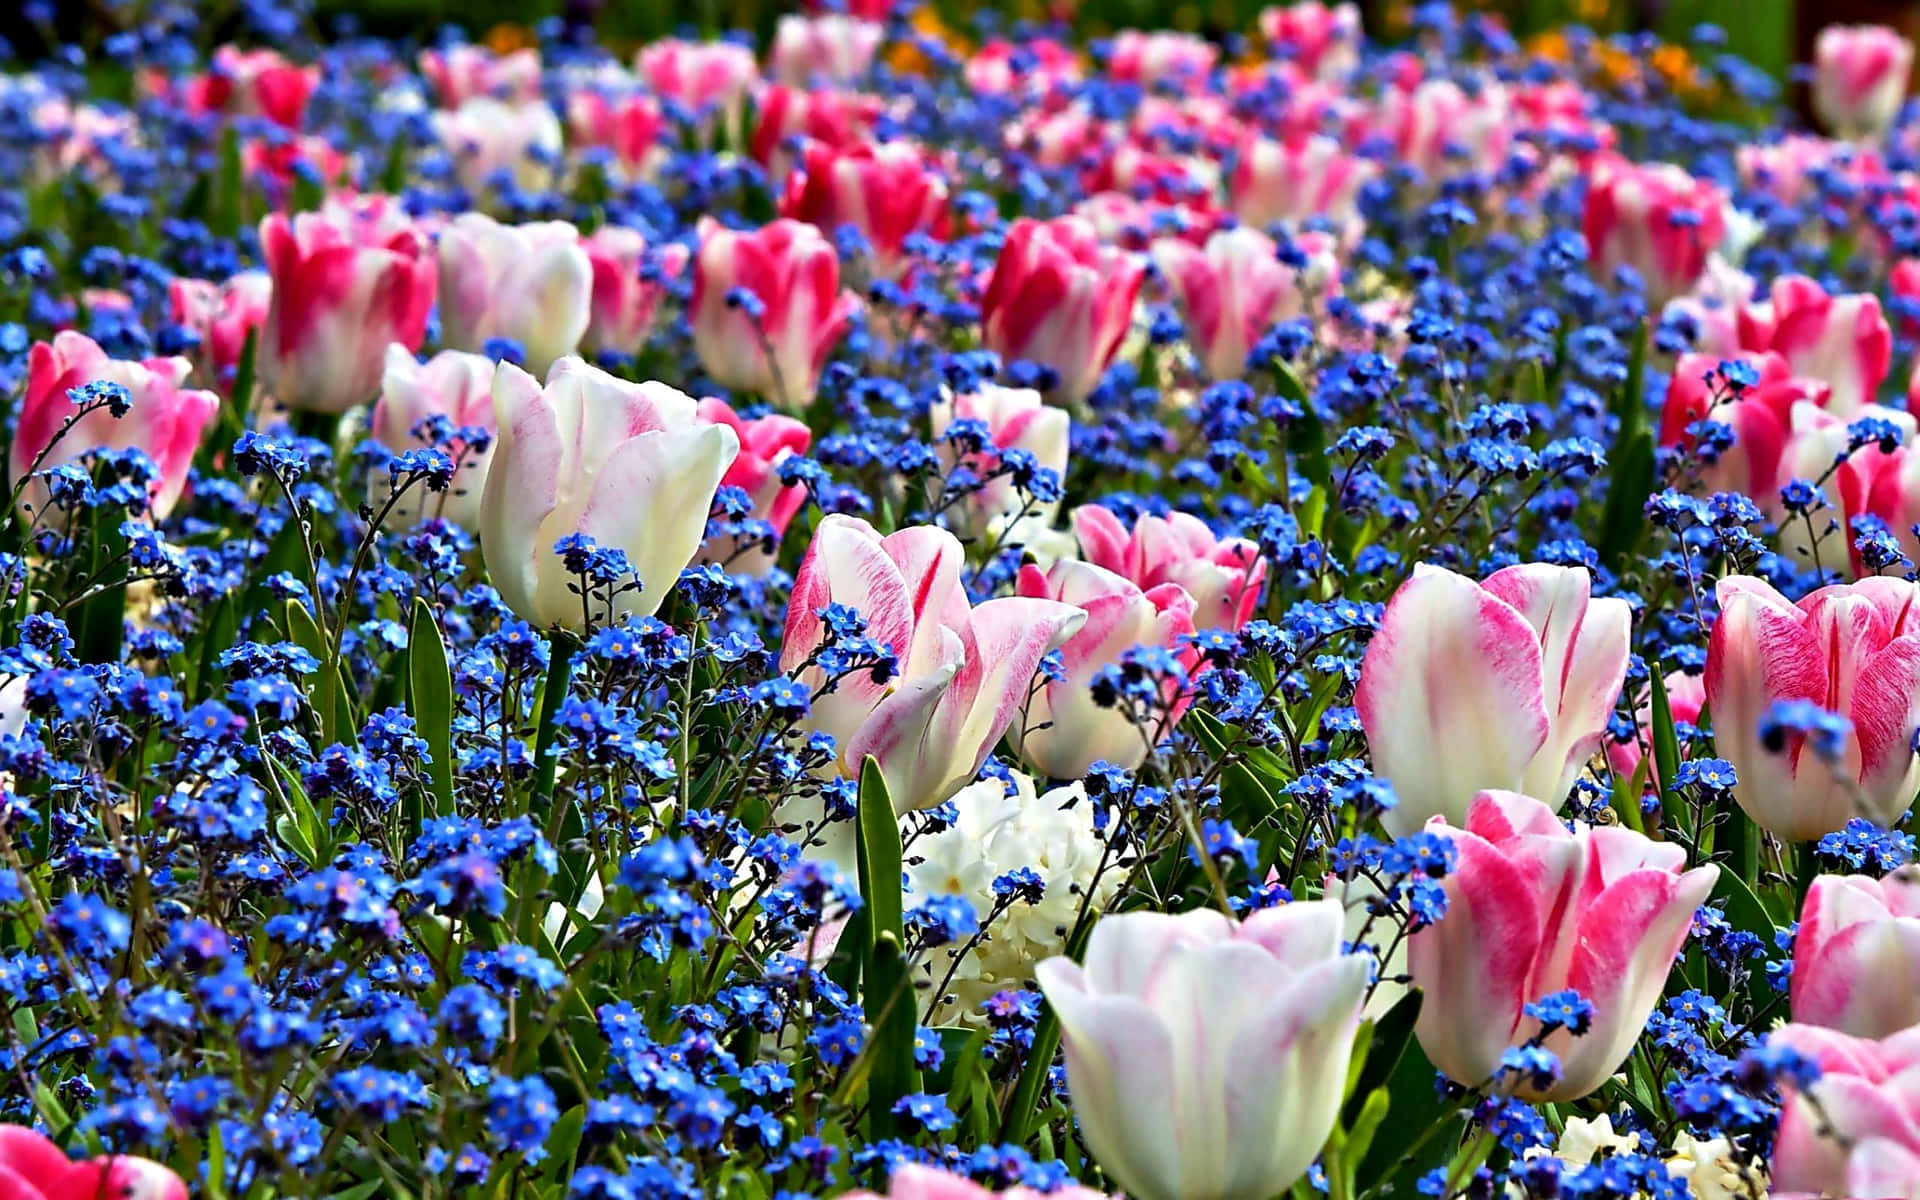 Fondode Pantalla De Tulipanes Rosados Y Blancos De Primavera.